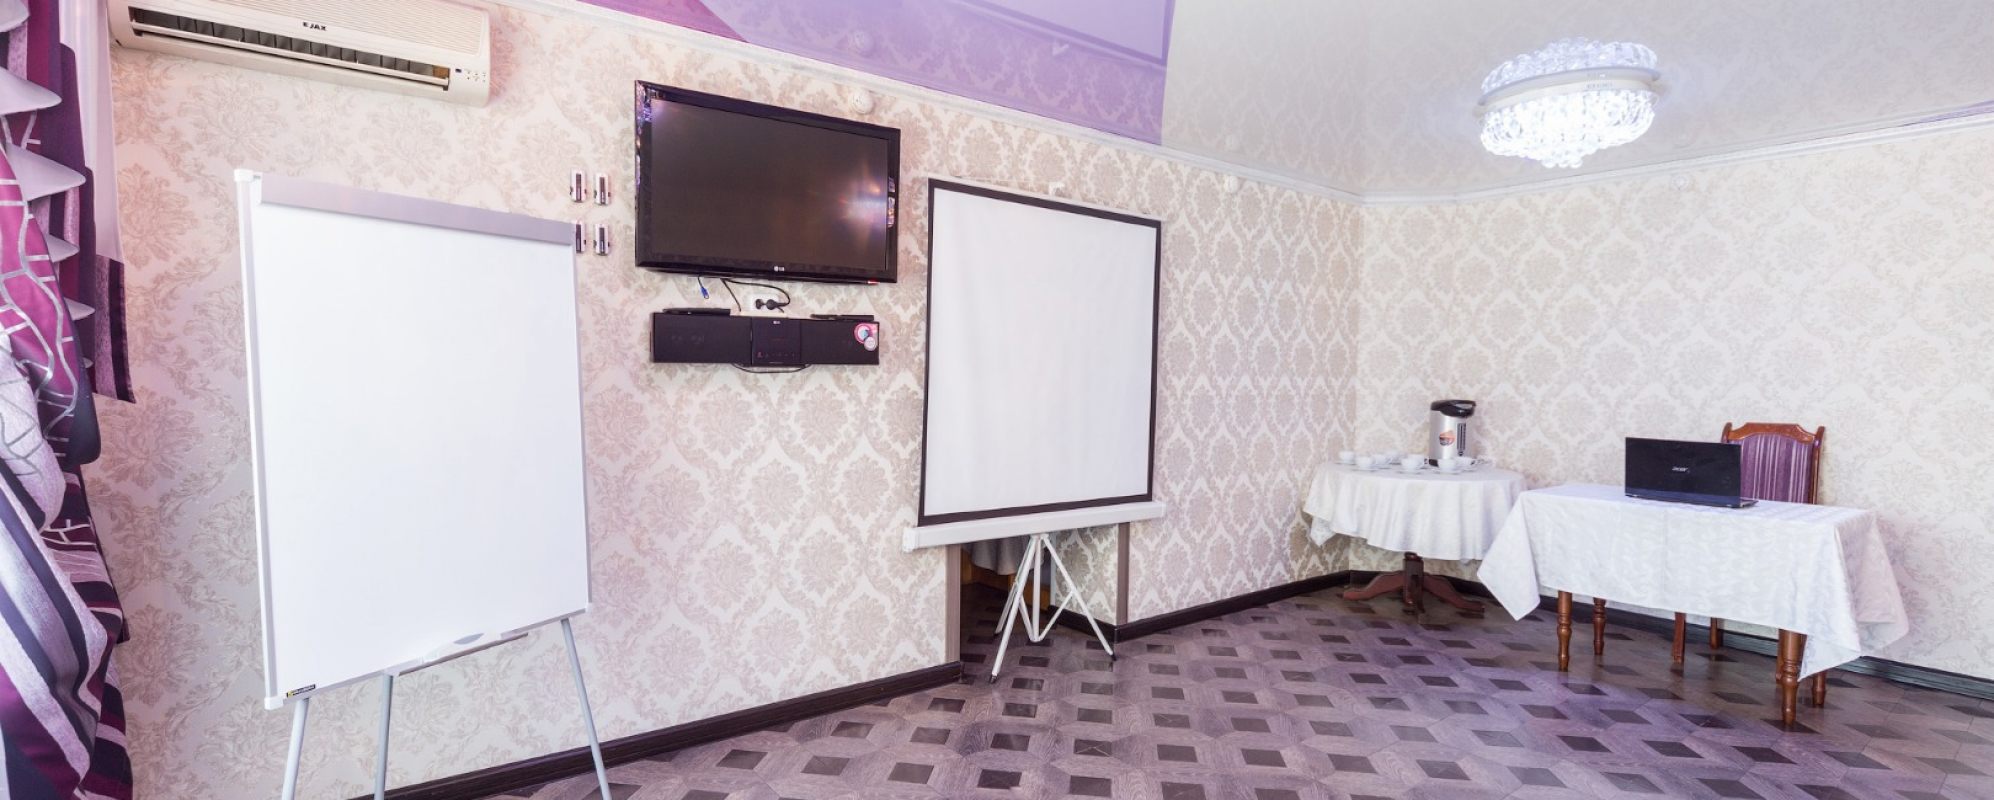 Фотографии банкетного зала Бузулук конференц-зал